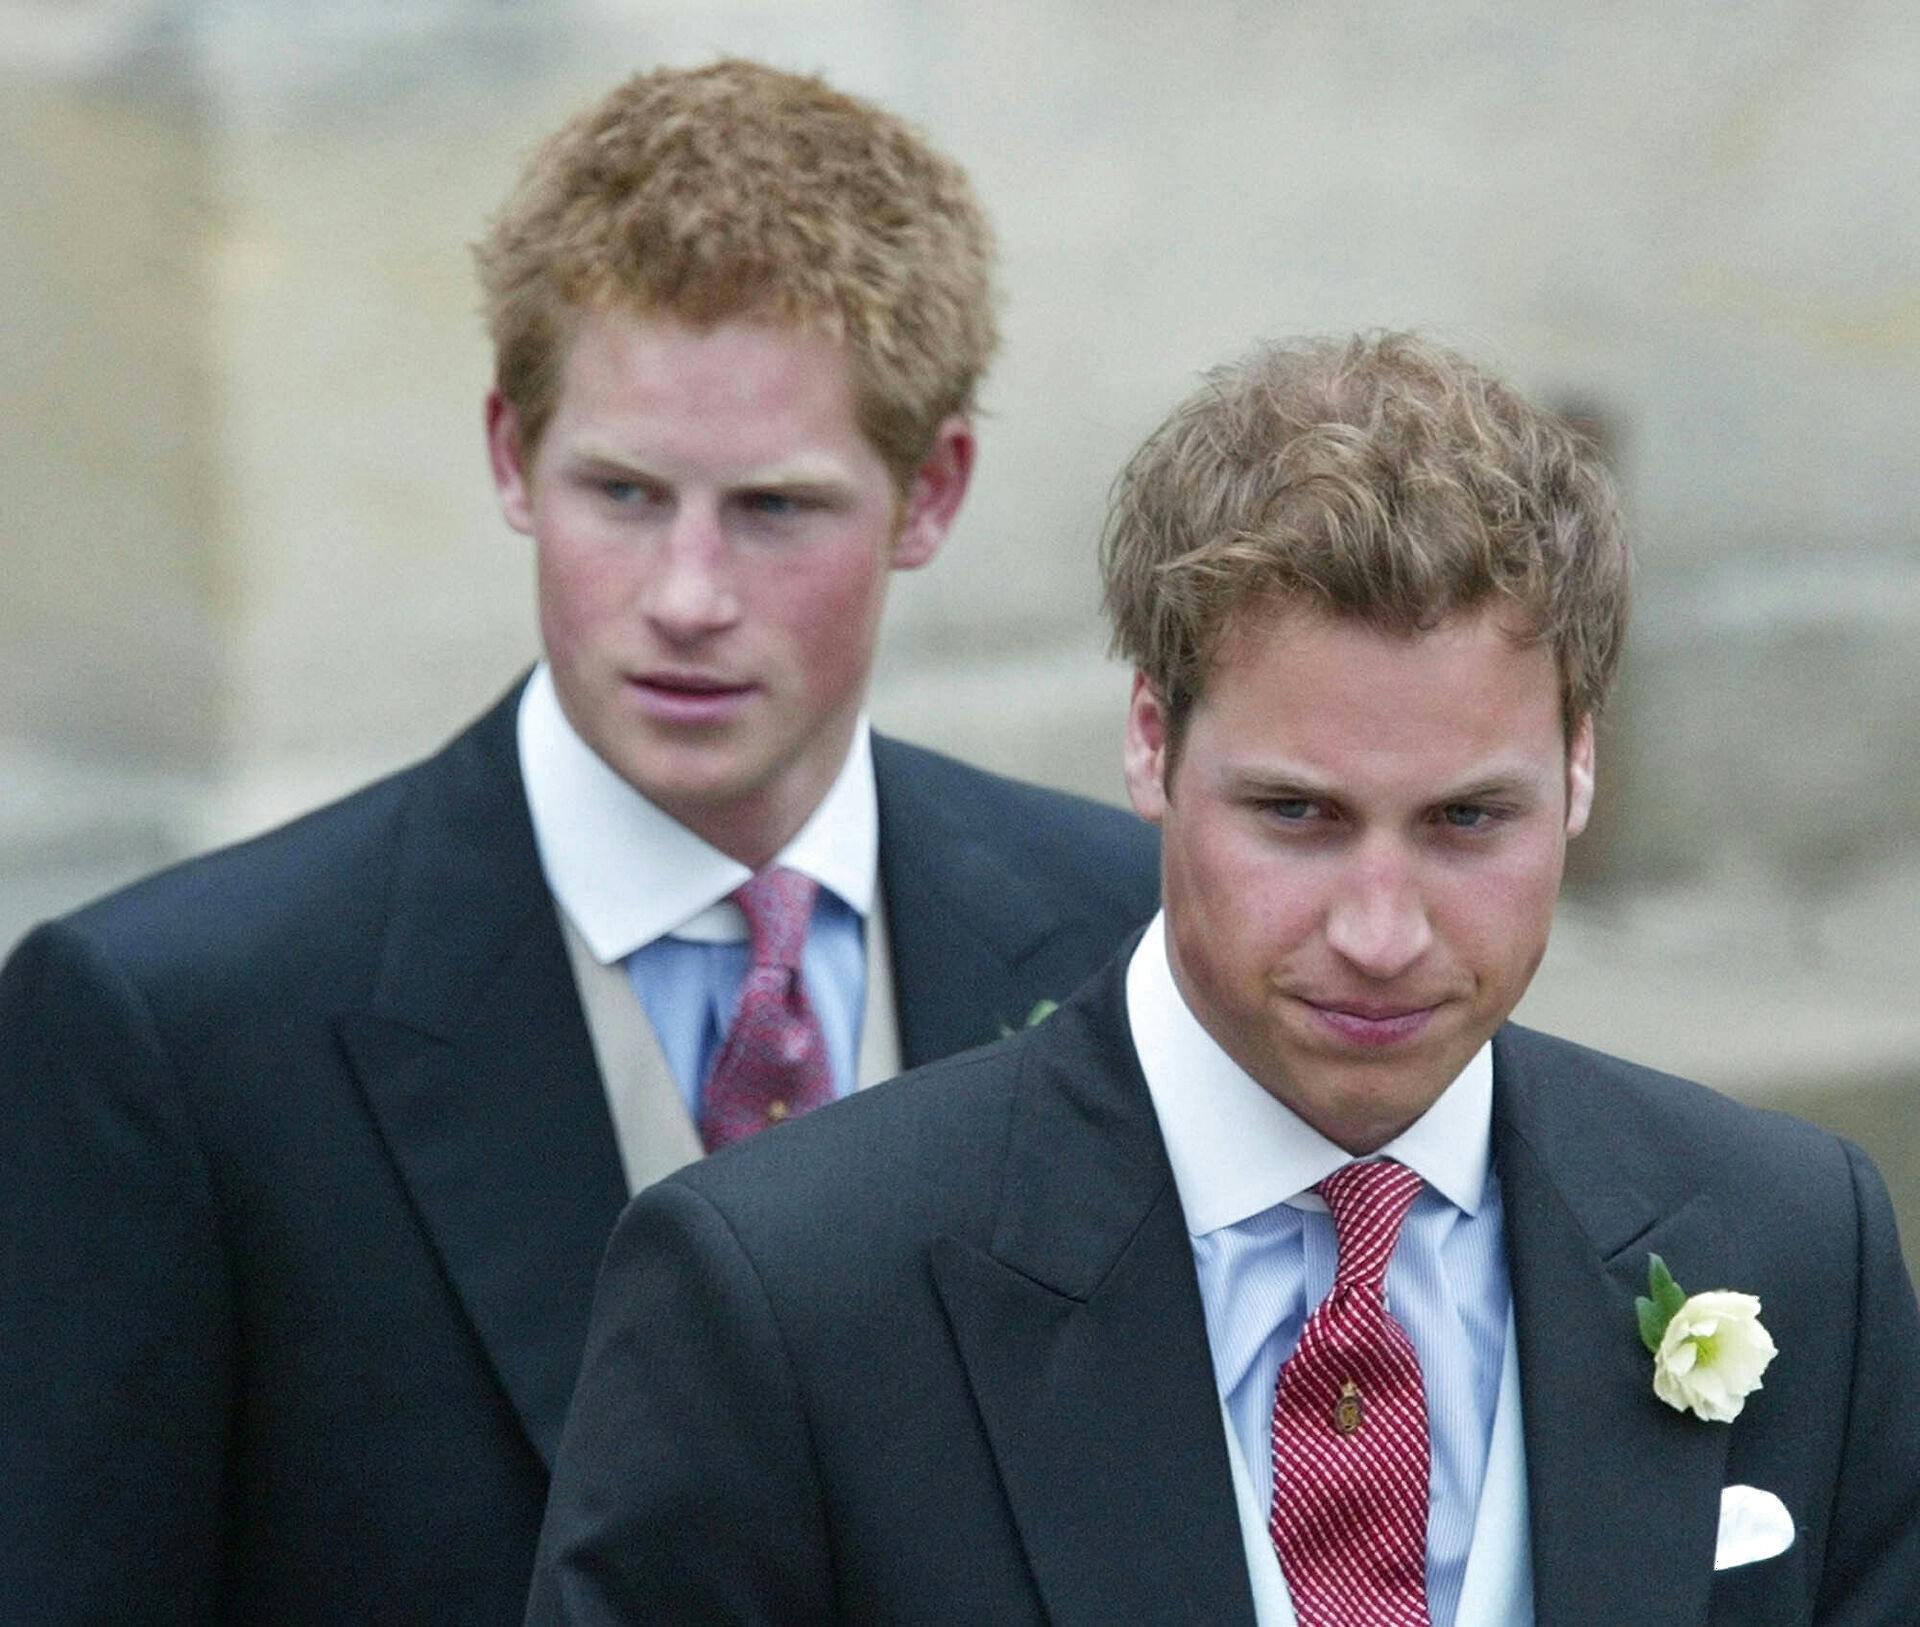 Forholdet mellem prins William (th.) og prins Harry har set bedre dage.
